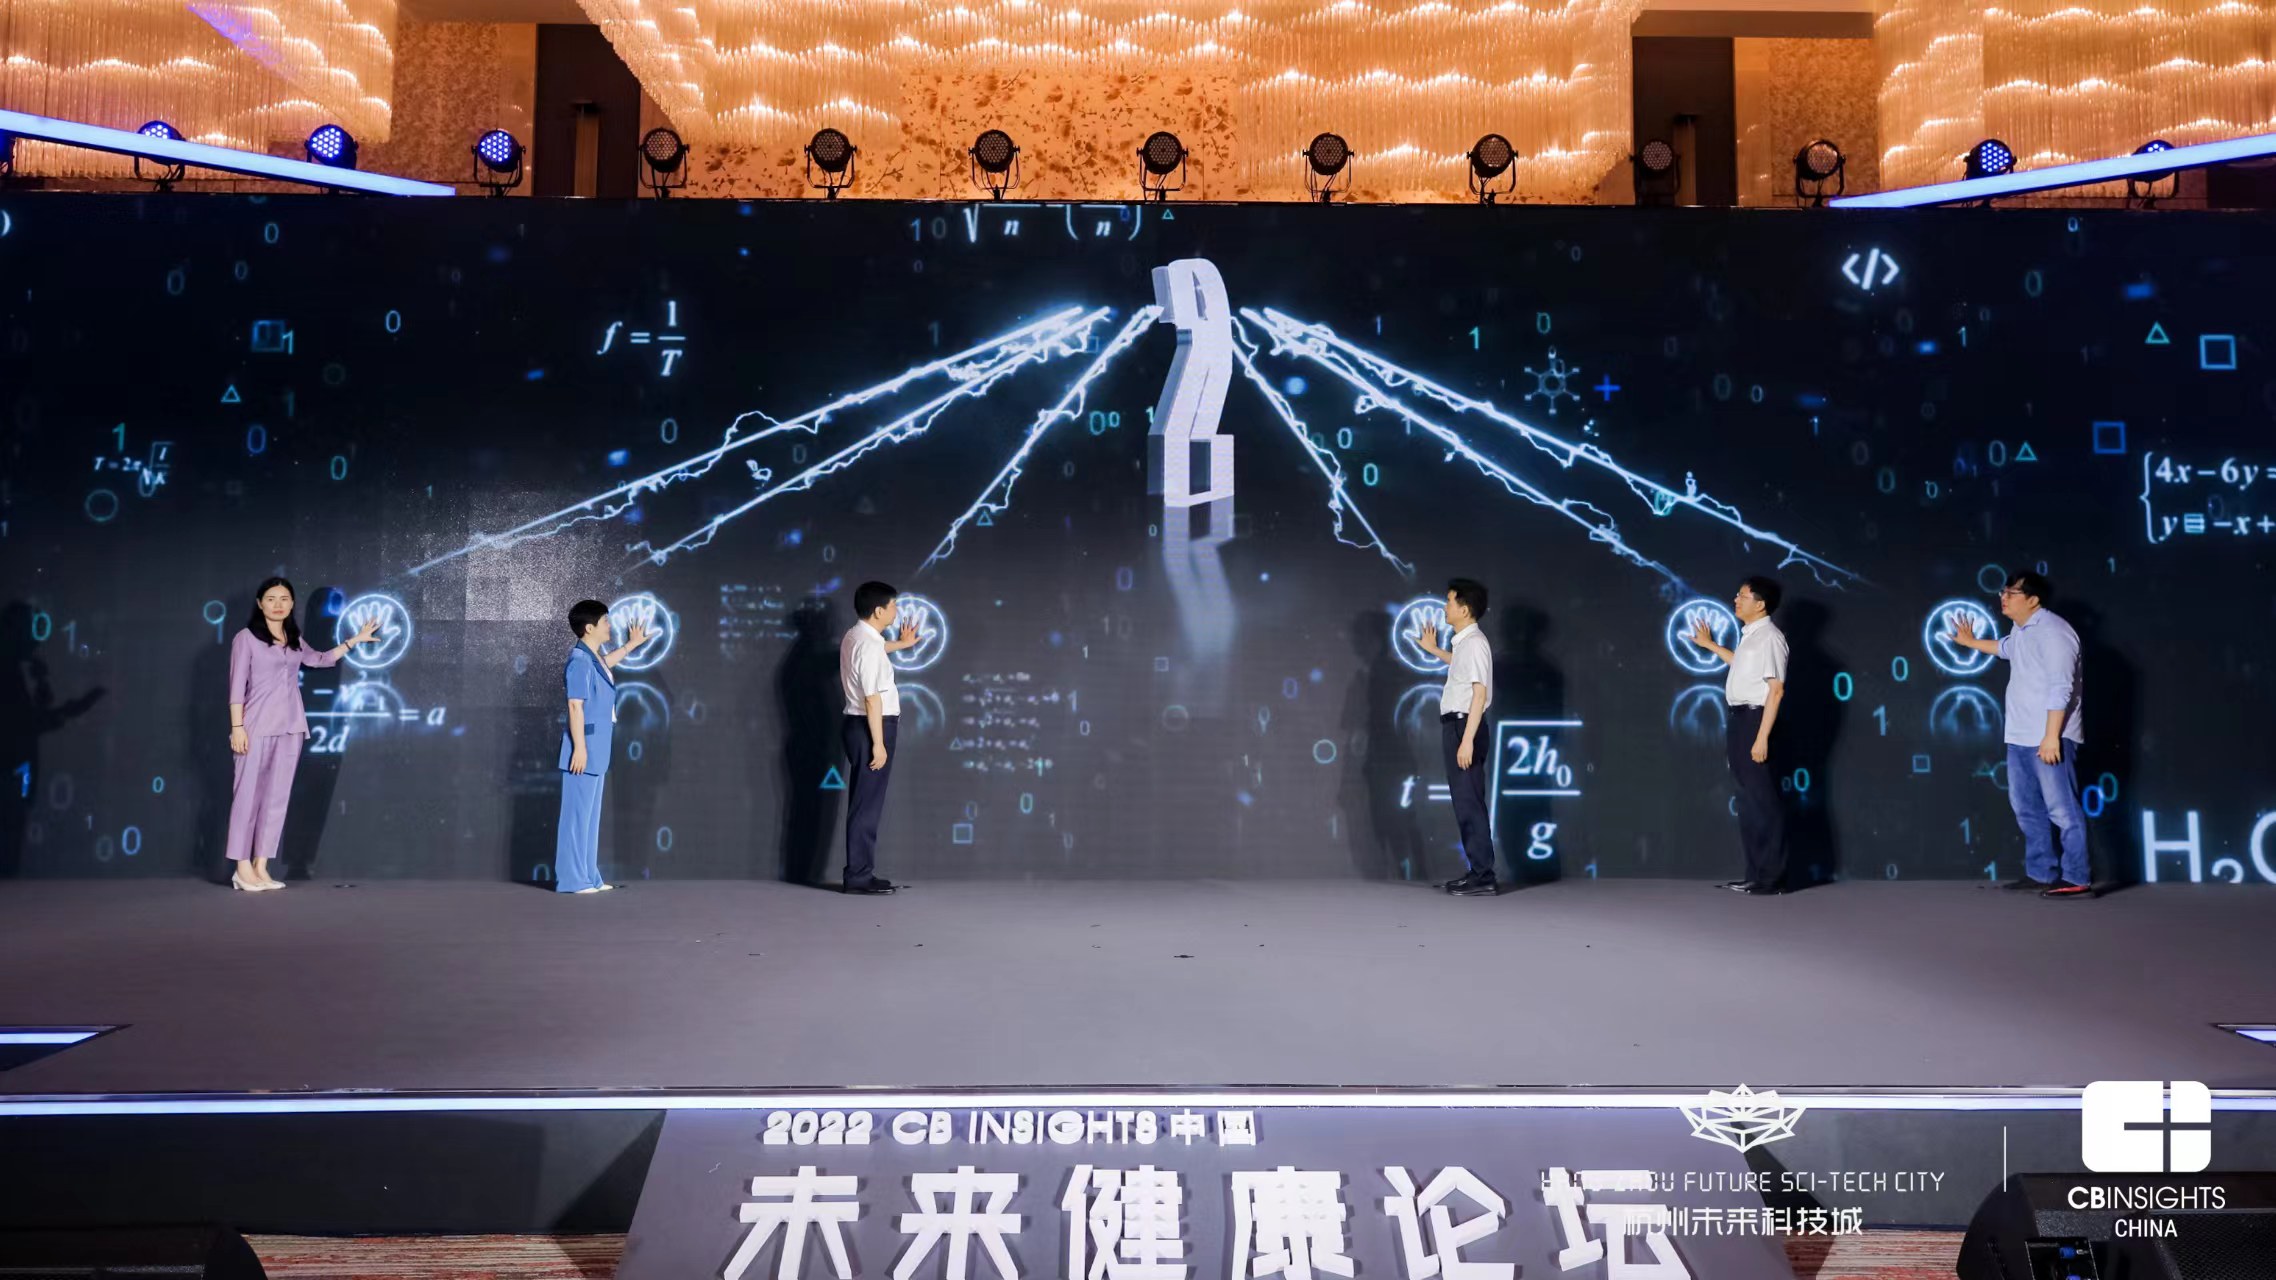 探索数字医疗新蓝海！2022 CB Insights中国未来健康论坛在未来科技城成功举办！